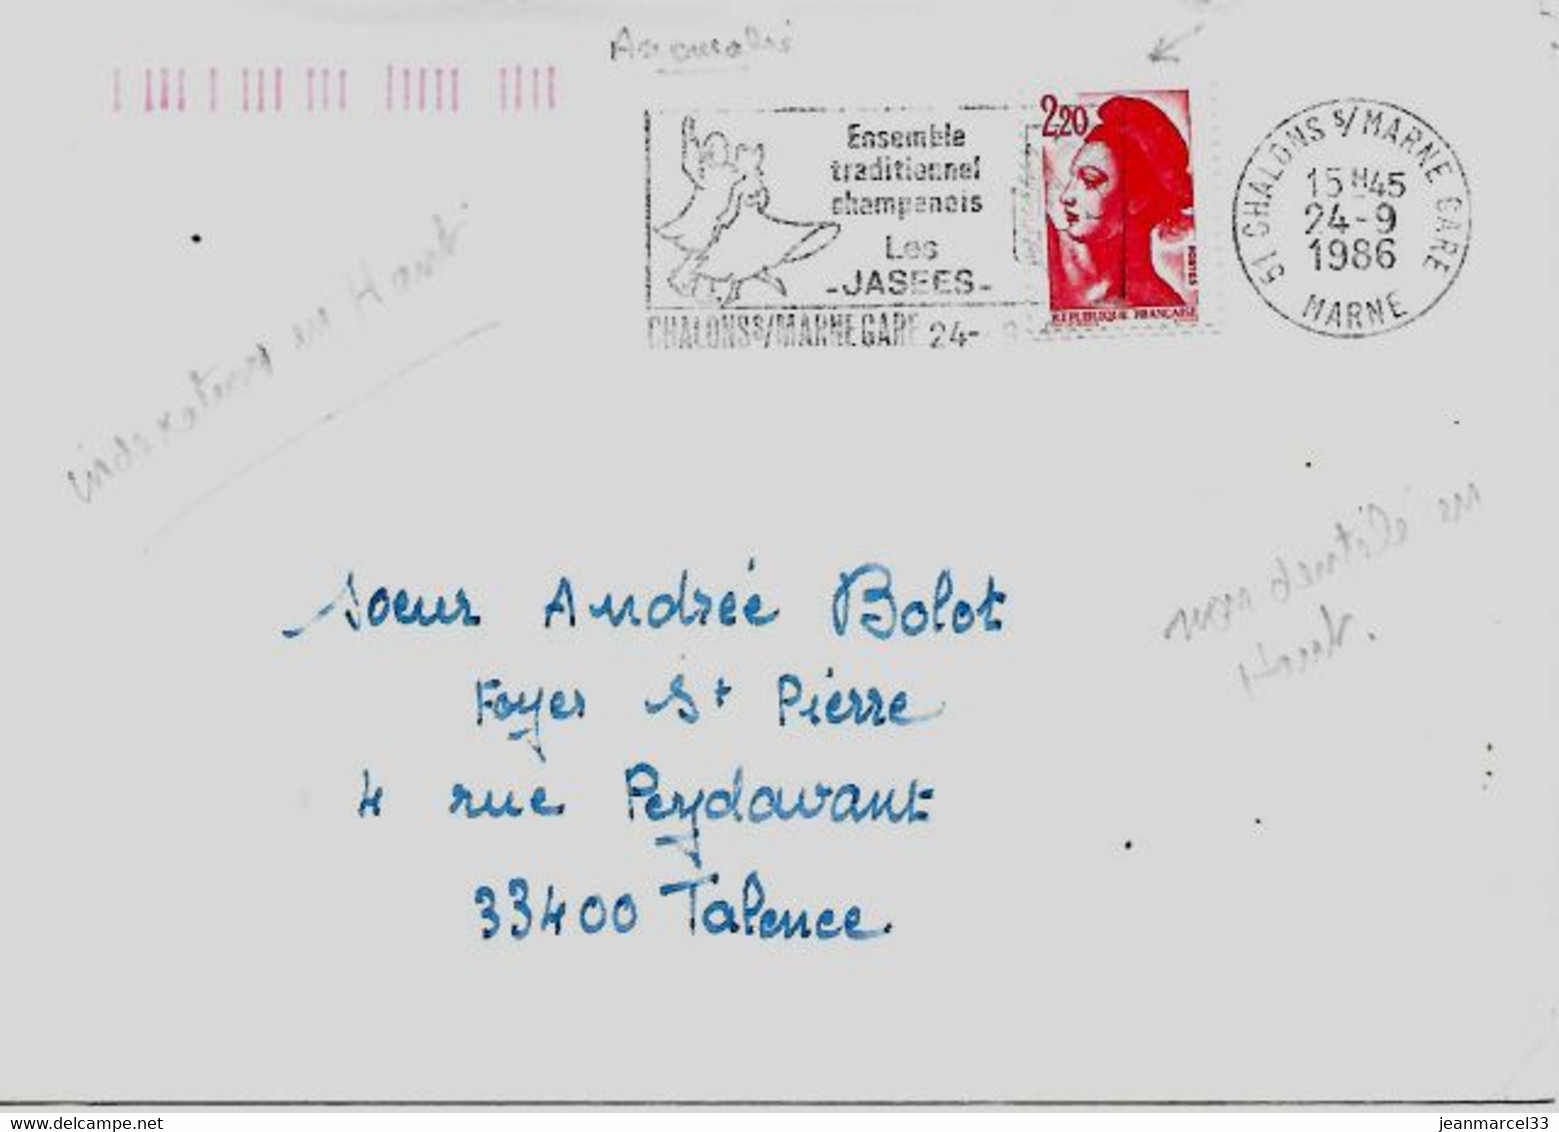 Curiosité 51 Chalons S/Marne Gare 24-9 1986, Timbre Non Dentelé En Haut, Indexation Orange En Haut à Gauche - Cartas & Documentos